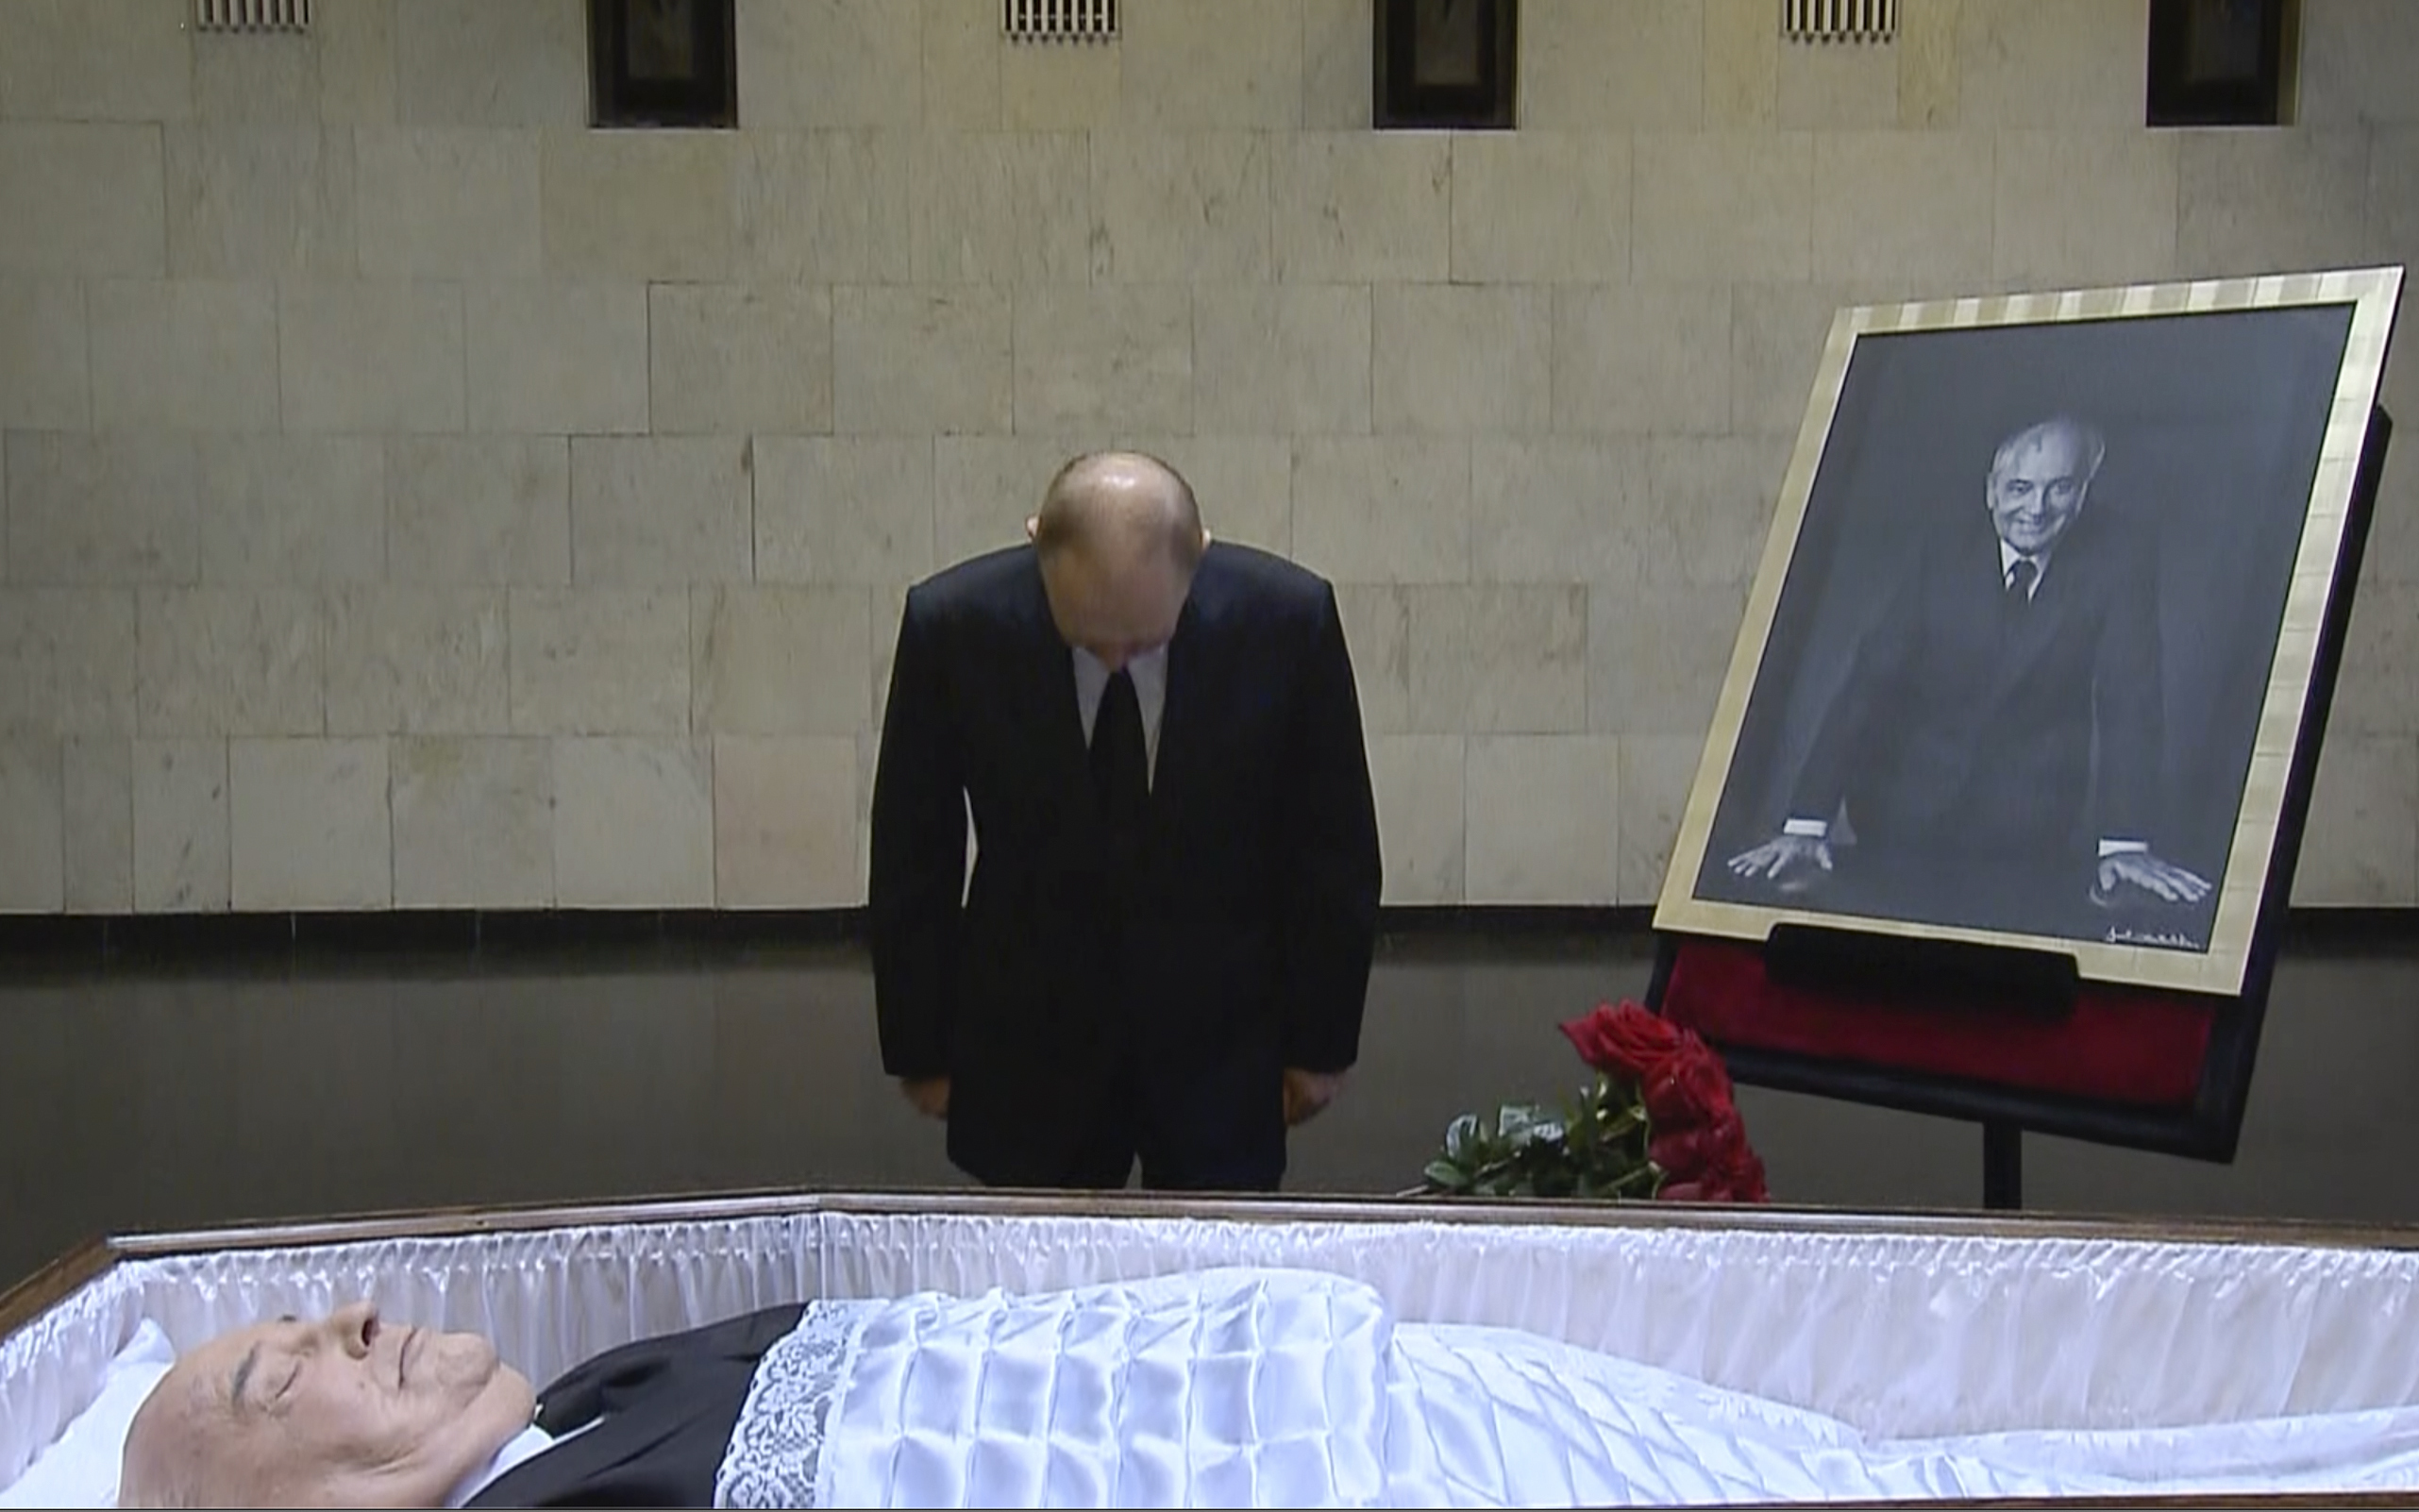 <p>Руският президент Владимир Путин няма да присъства на погребението на Михаил Горбачов в събота, тъй като работният график, &quot;за съжаление, не му позволява&quot;, заяви&nbsp;Дмитрий Песков.</p>

<p>Путин се е простил с последния съветски&nbsp;лидер в Централната клинична болница в Москва и е положил цветя на ковчега му. Руската държавна телевизия показа как Путин се доближава до отворения ковчег на Горбачов и поставя букет червени рози до него. Той стои за кратко в мълчание и с наведена глава, докосва ковчега, прекръства се и се оттегля.</p>